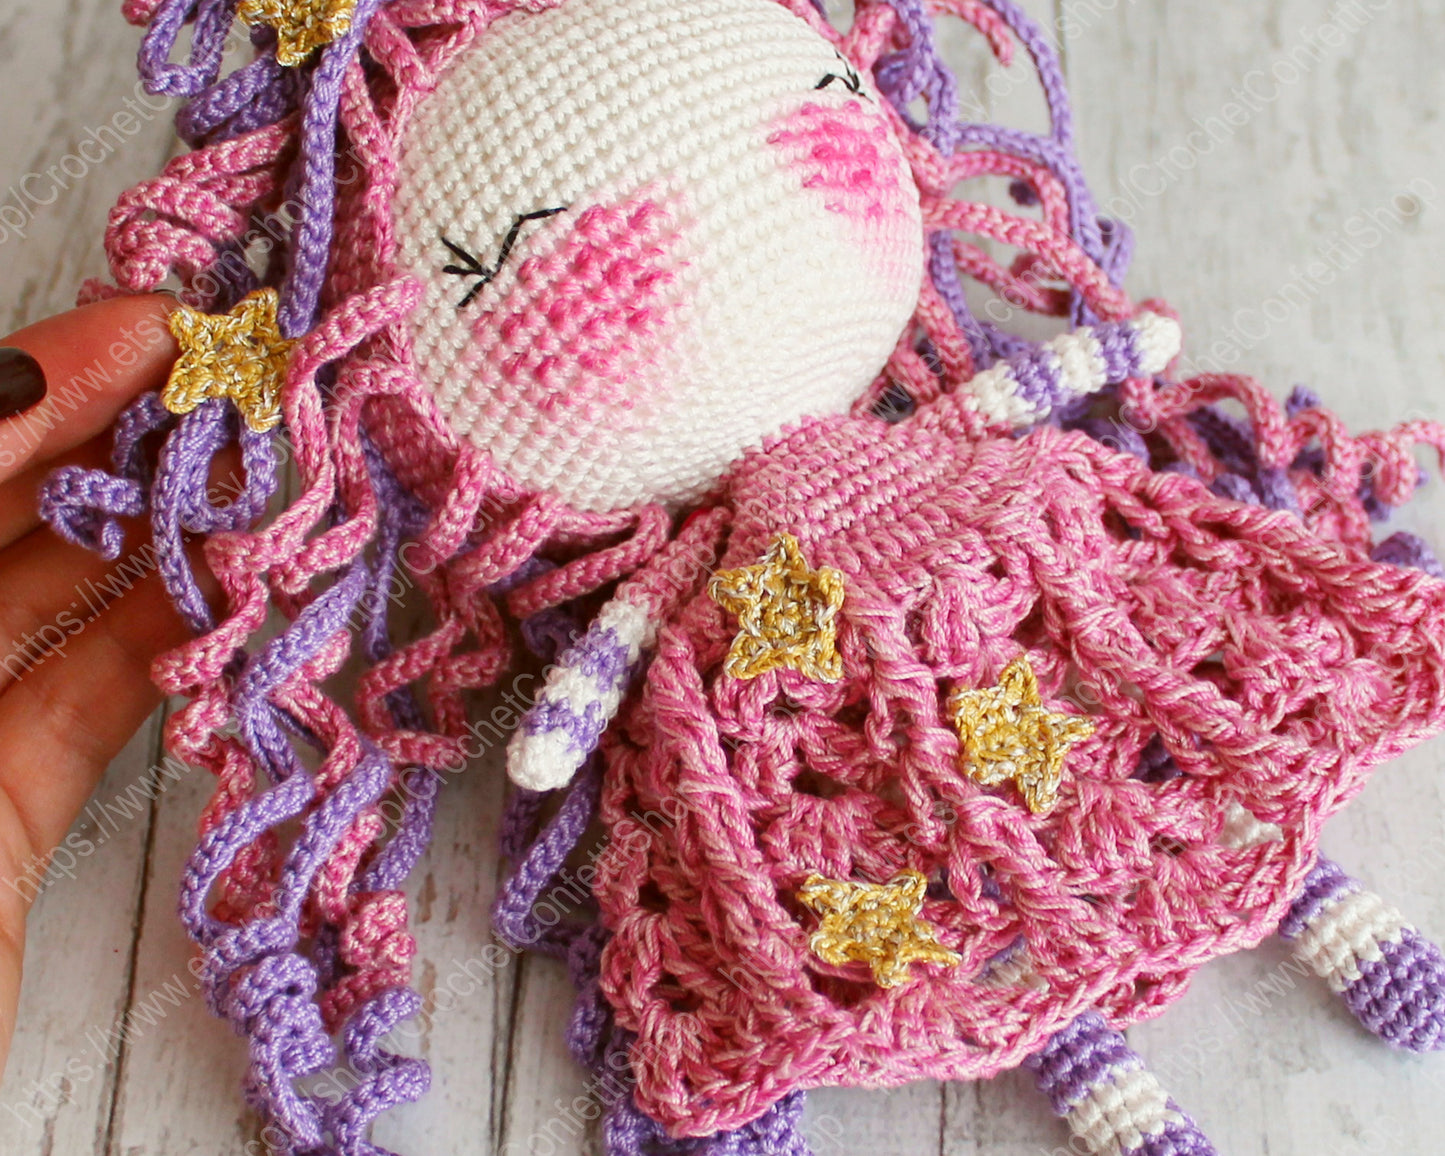 crochet pattern toy